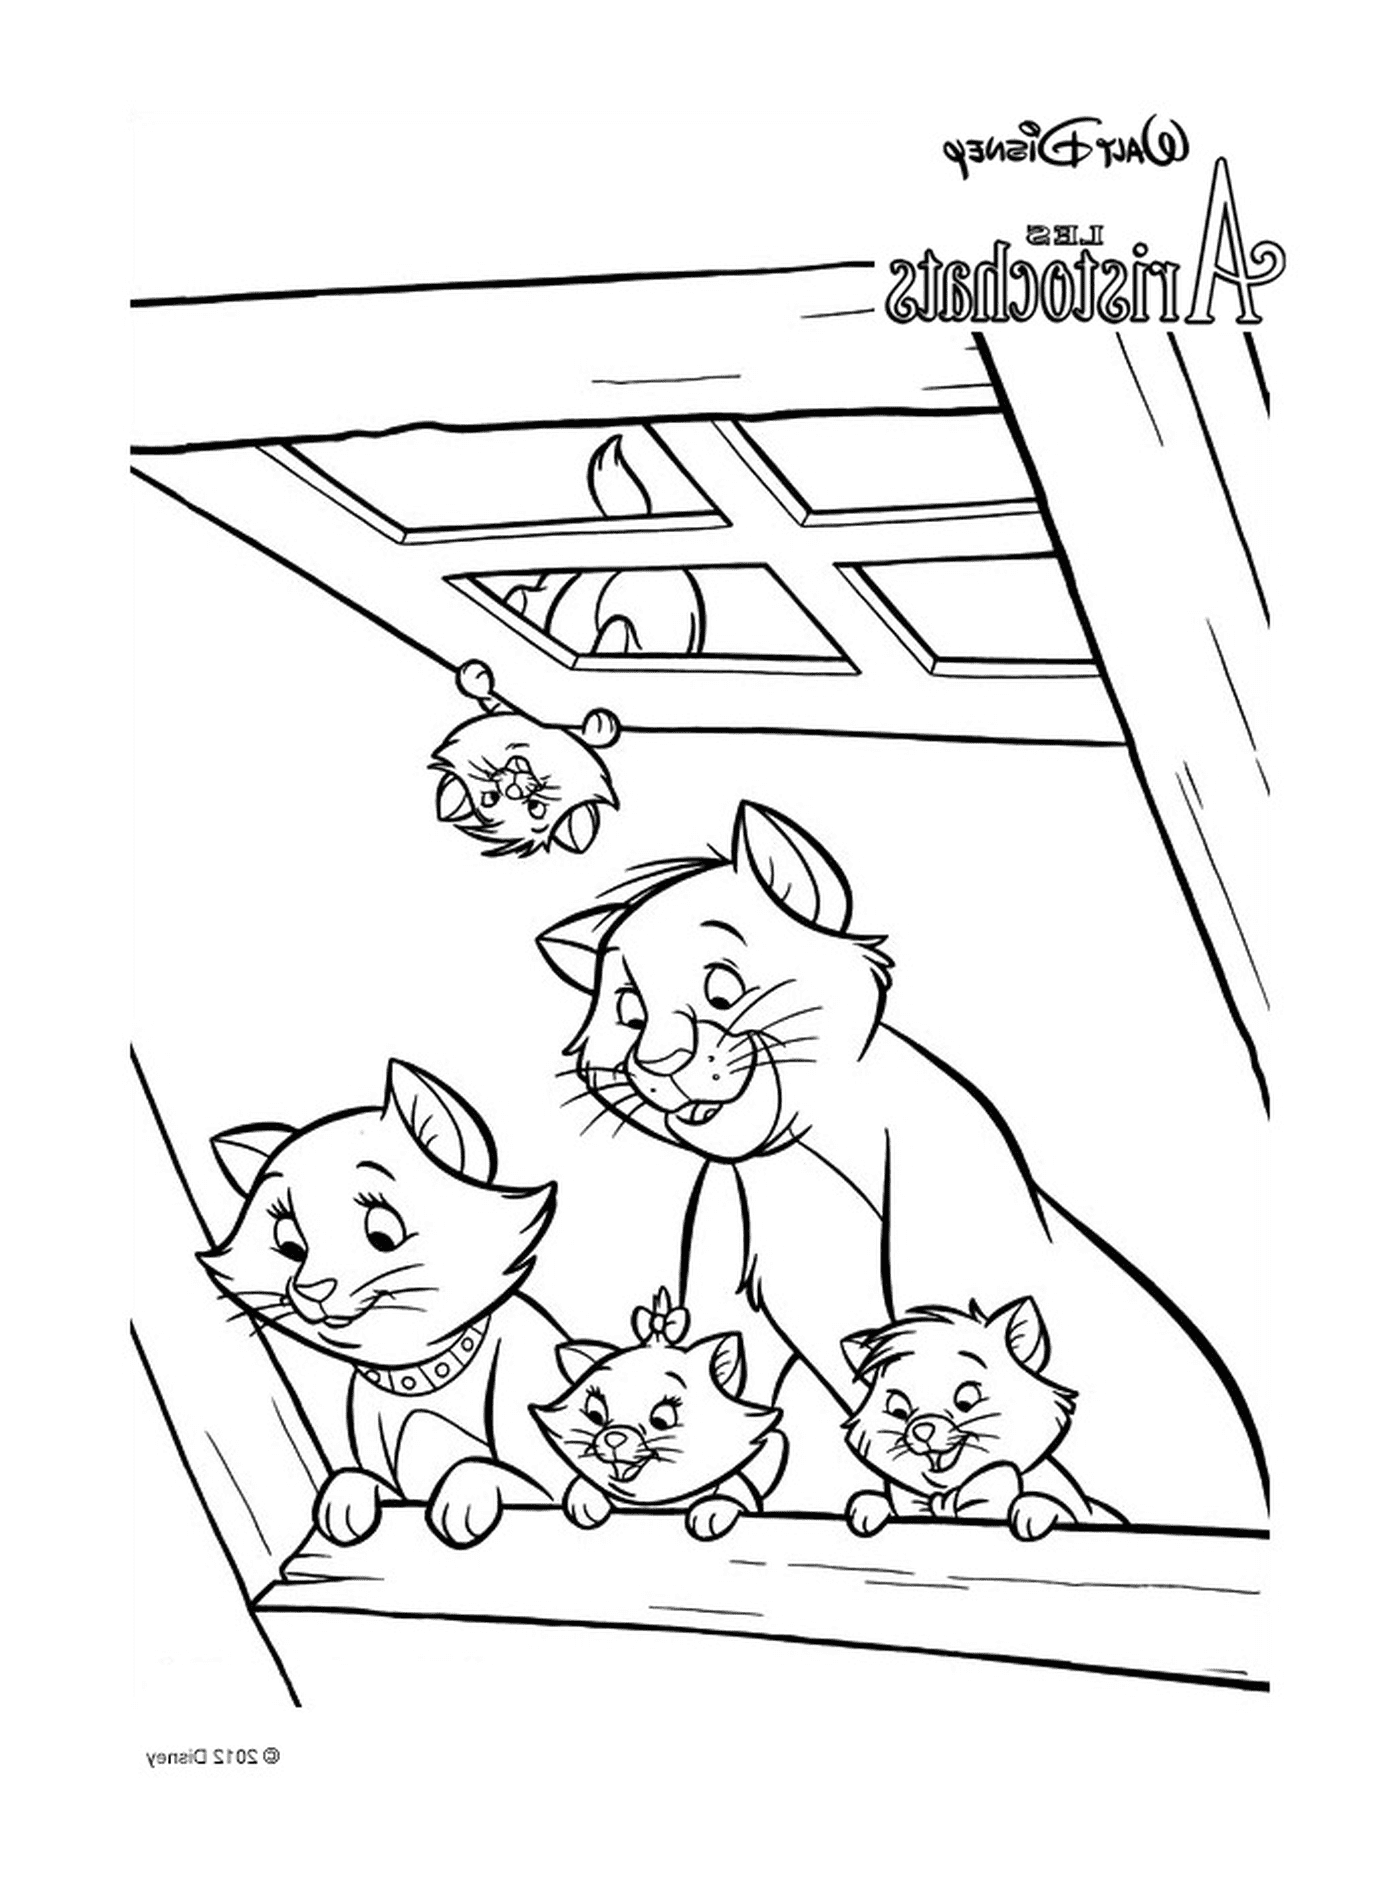  Um grupo de gatos sentados no telhado de um edifício 